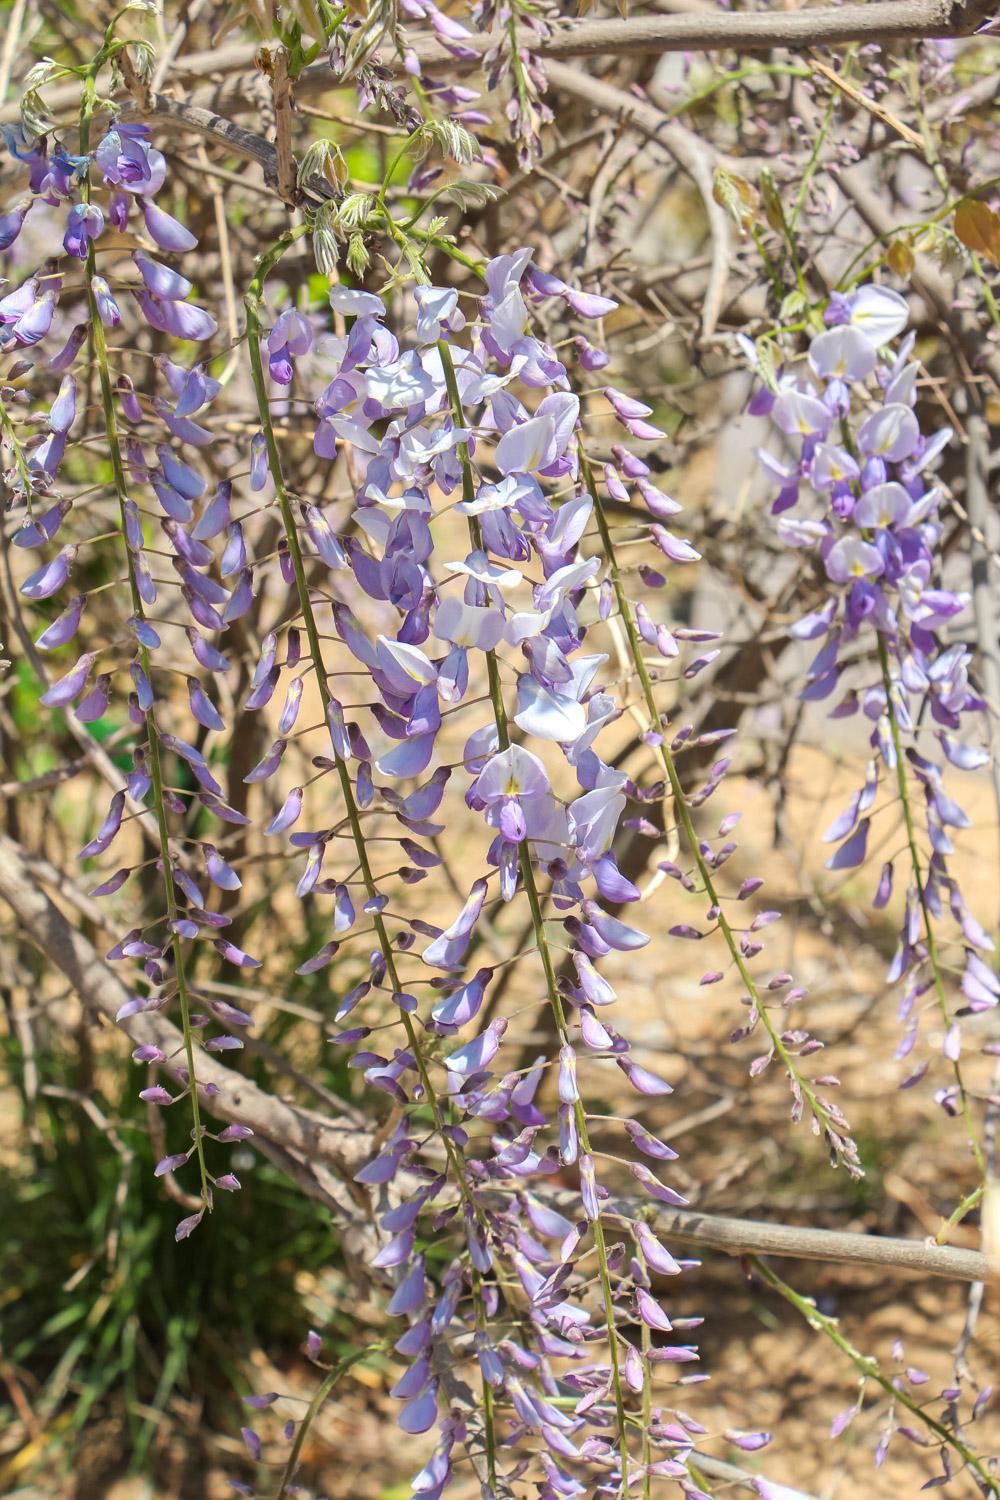 紫丁香是什么植物